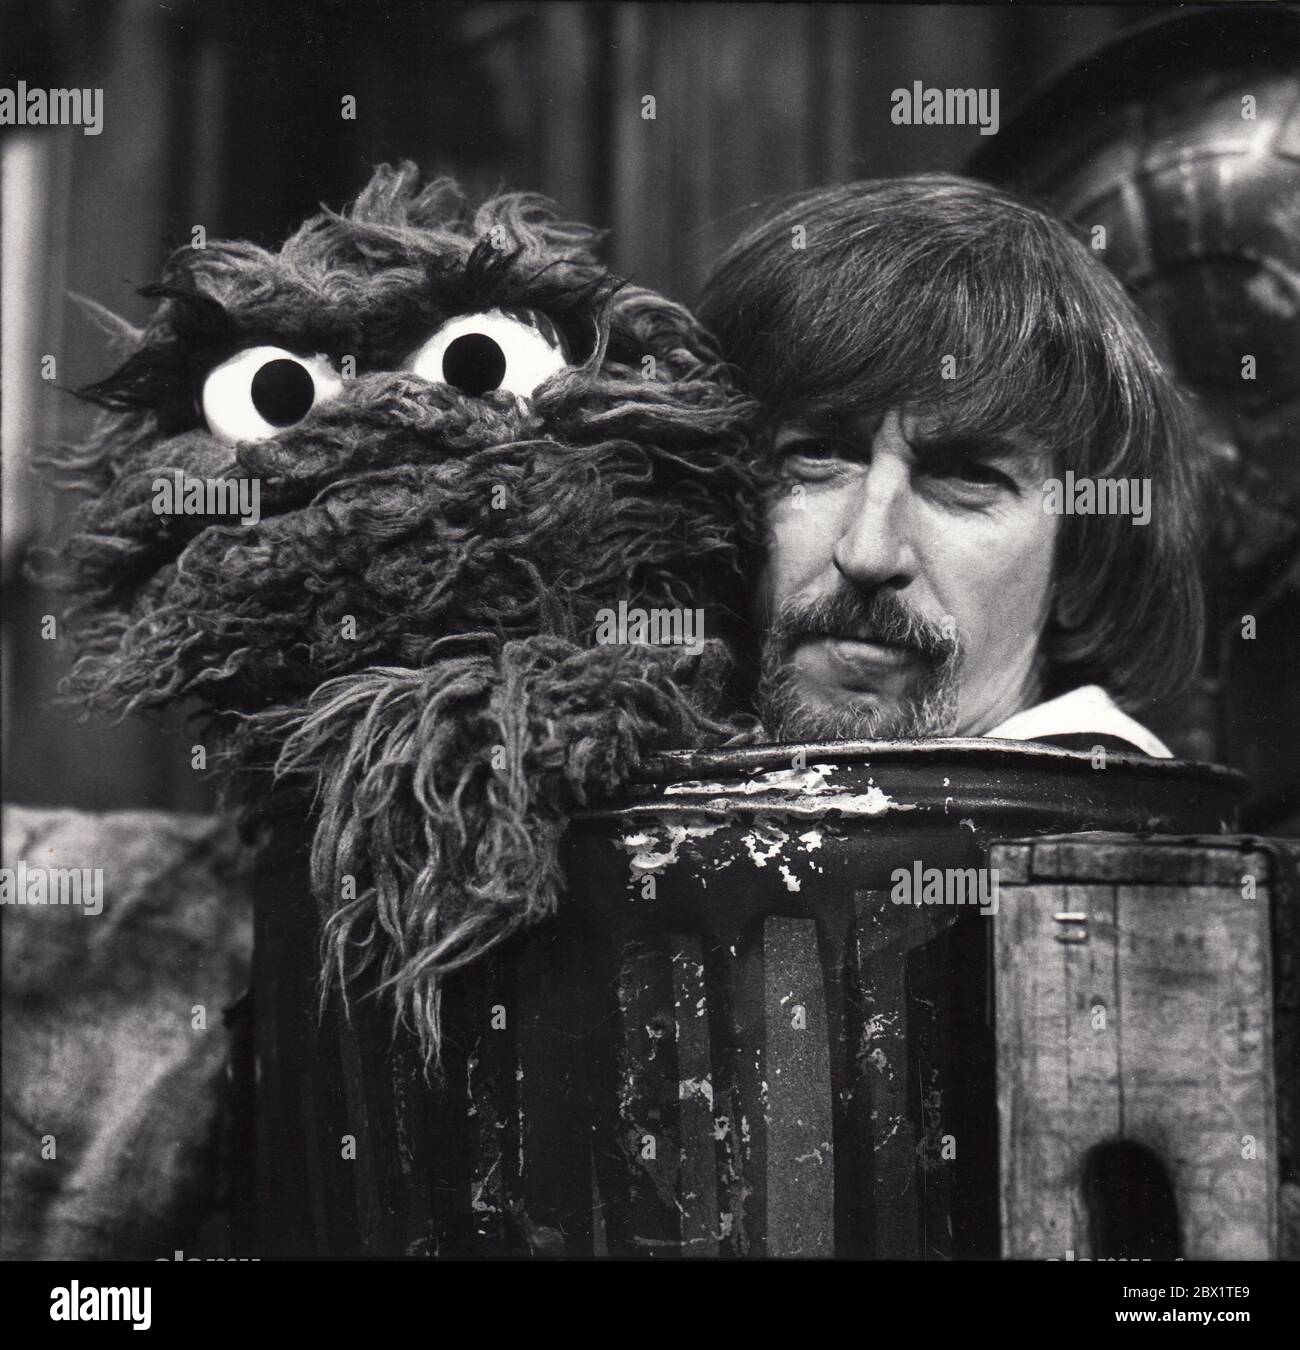 Carroll Spinney, marionnettiste de Sesame Street, partage une poubelle avec  Oscar The Grouch lors d'une série de spectacles à la fin des années 1970  Photo Stock - Alamy